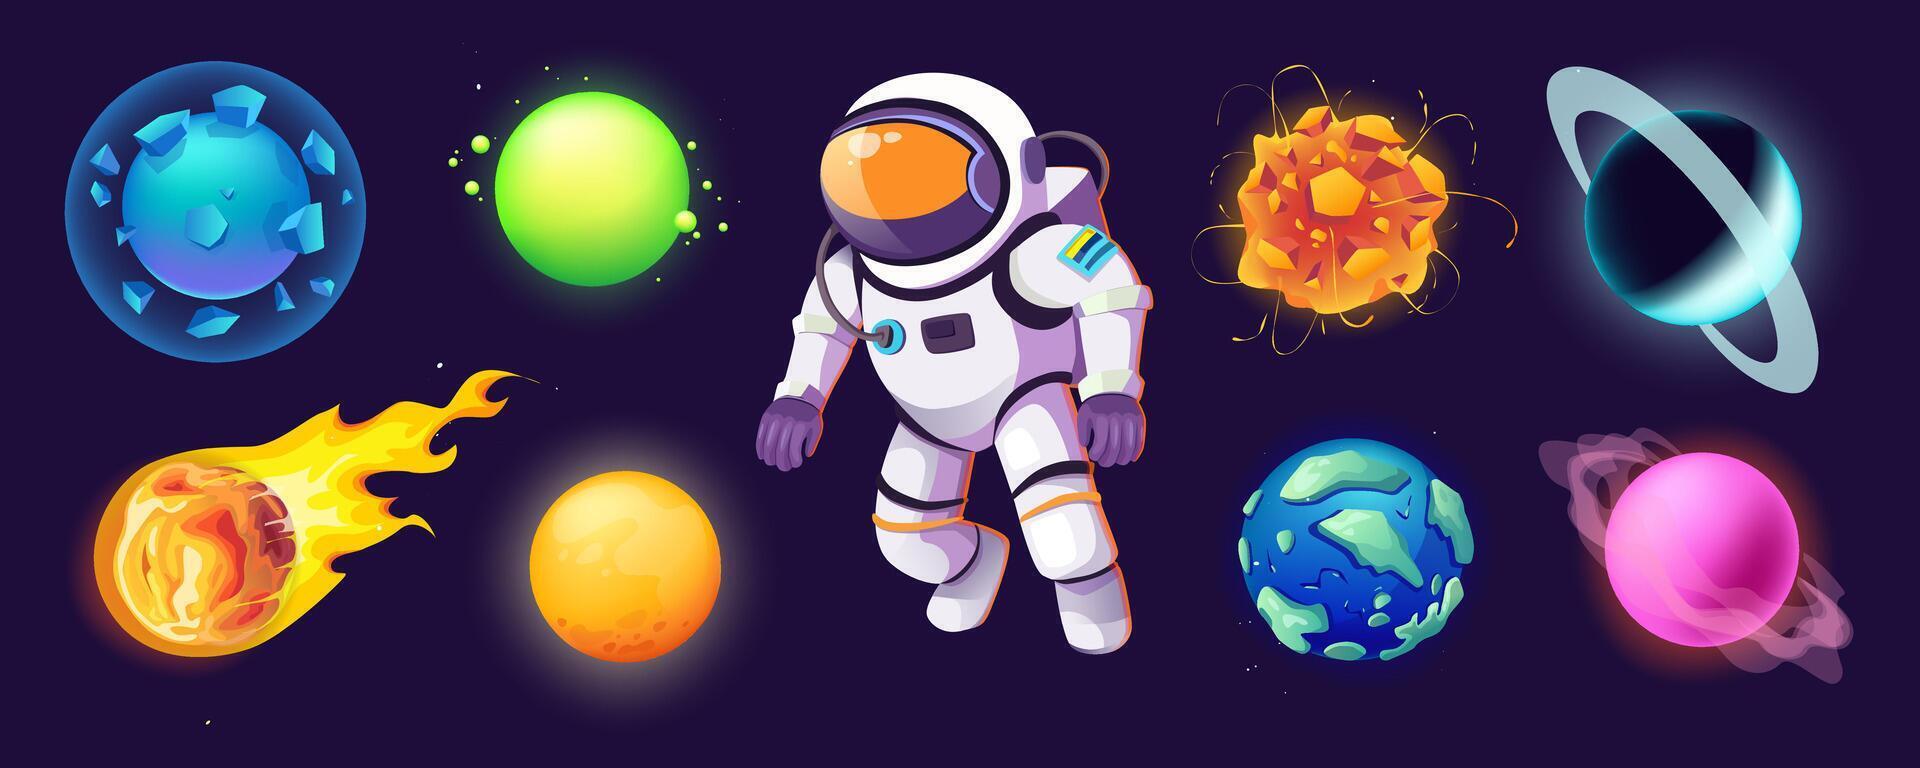 astronaut och planeter mega uppsättning i tecknad serie grafisk design. bunt element av fantasi utomjording planeter, kometer, asteroider, meteoriter och flygande explorer rymdman. vektor illustration isolerat objekt